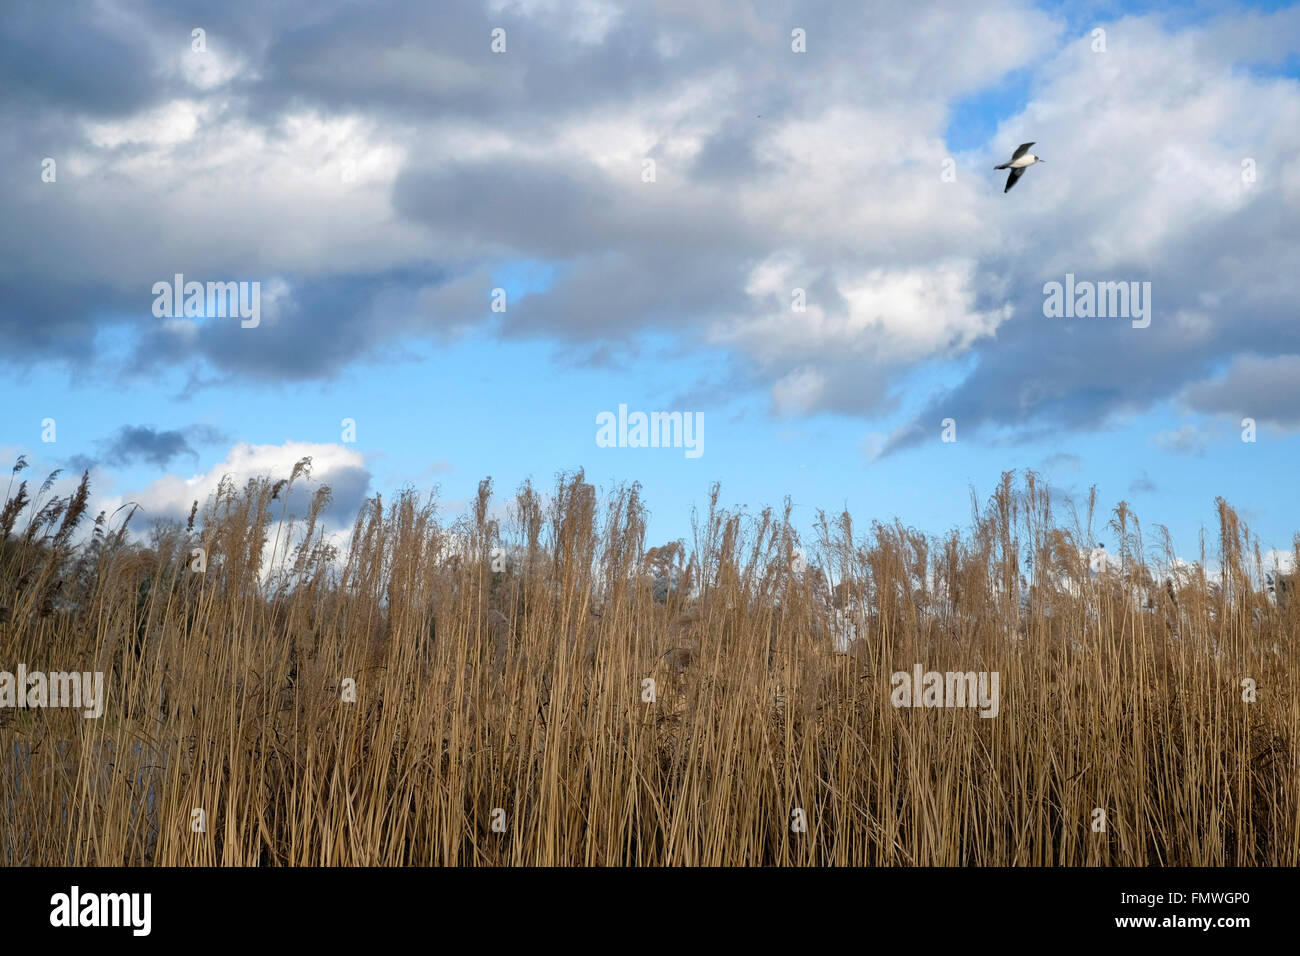 A single bird flying in Kensington Gardens Stock Photo